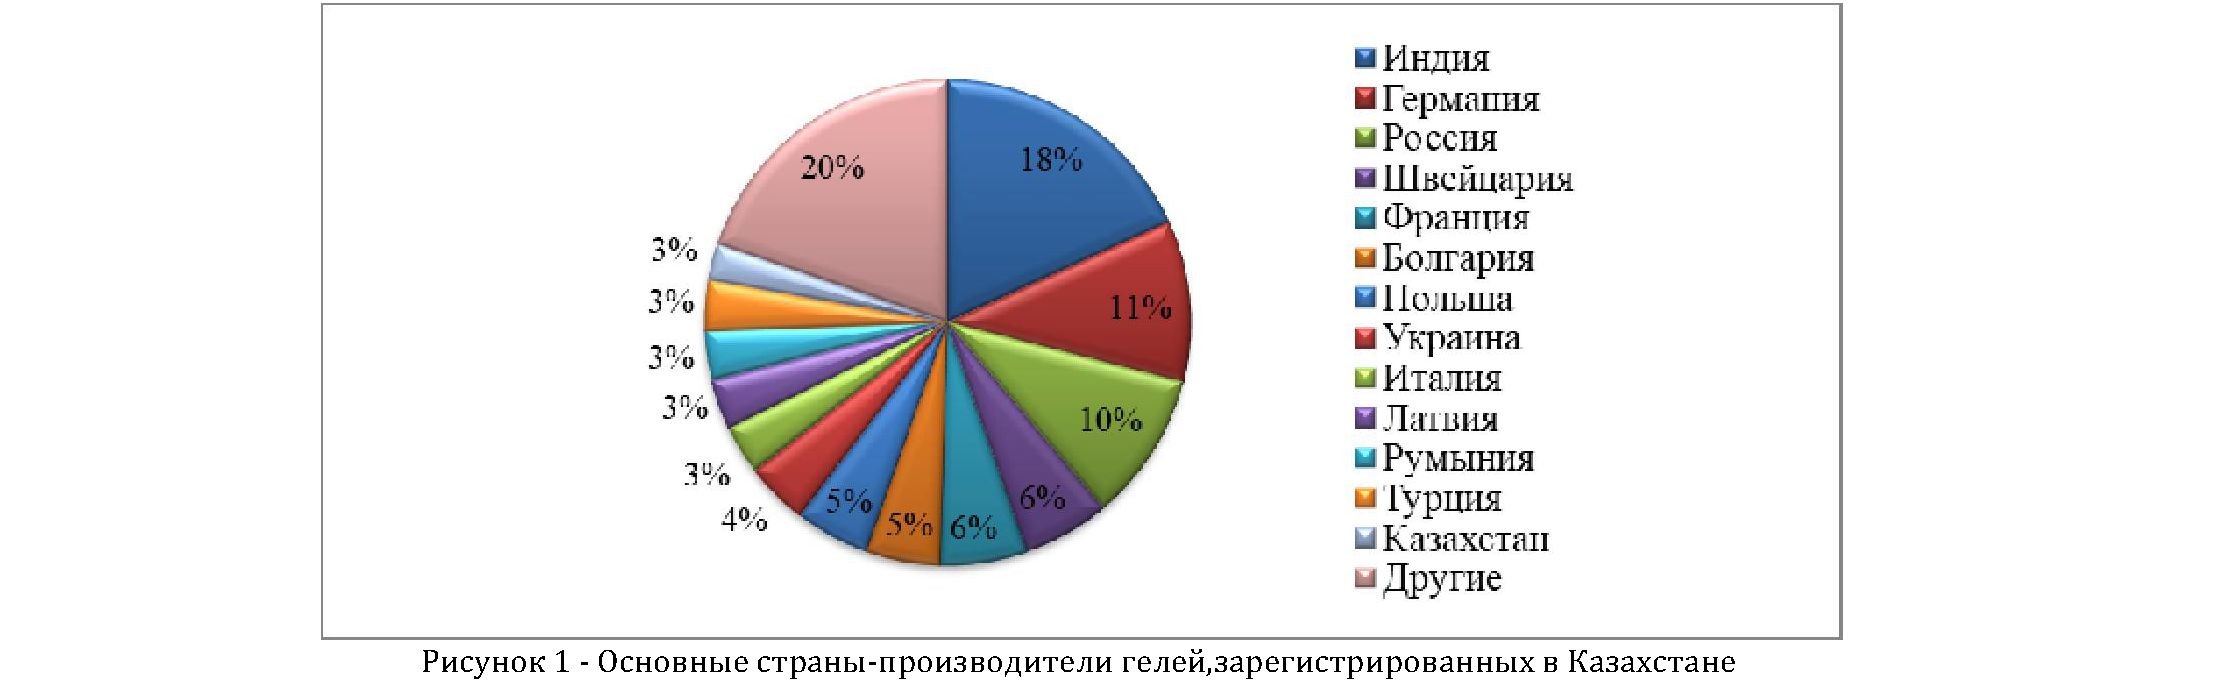 Маркетинговые исследования ассортимента ранозаживляющих гелей на фармацевтическом рынке республики Казахстан